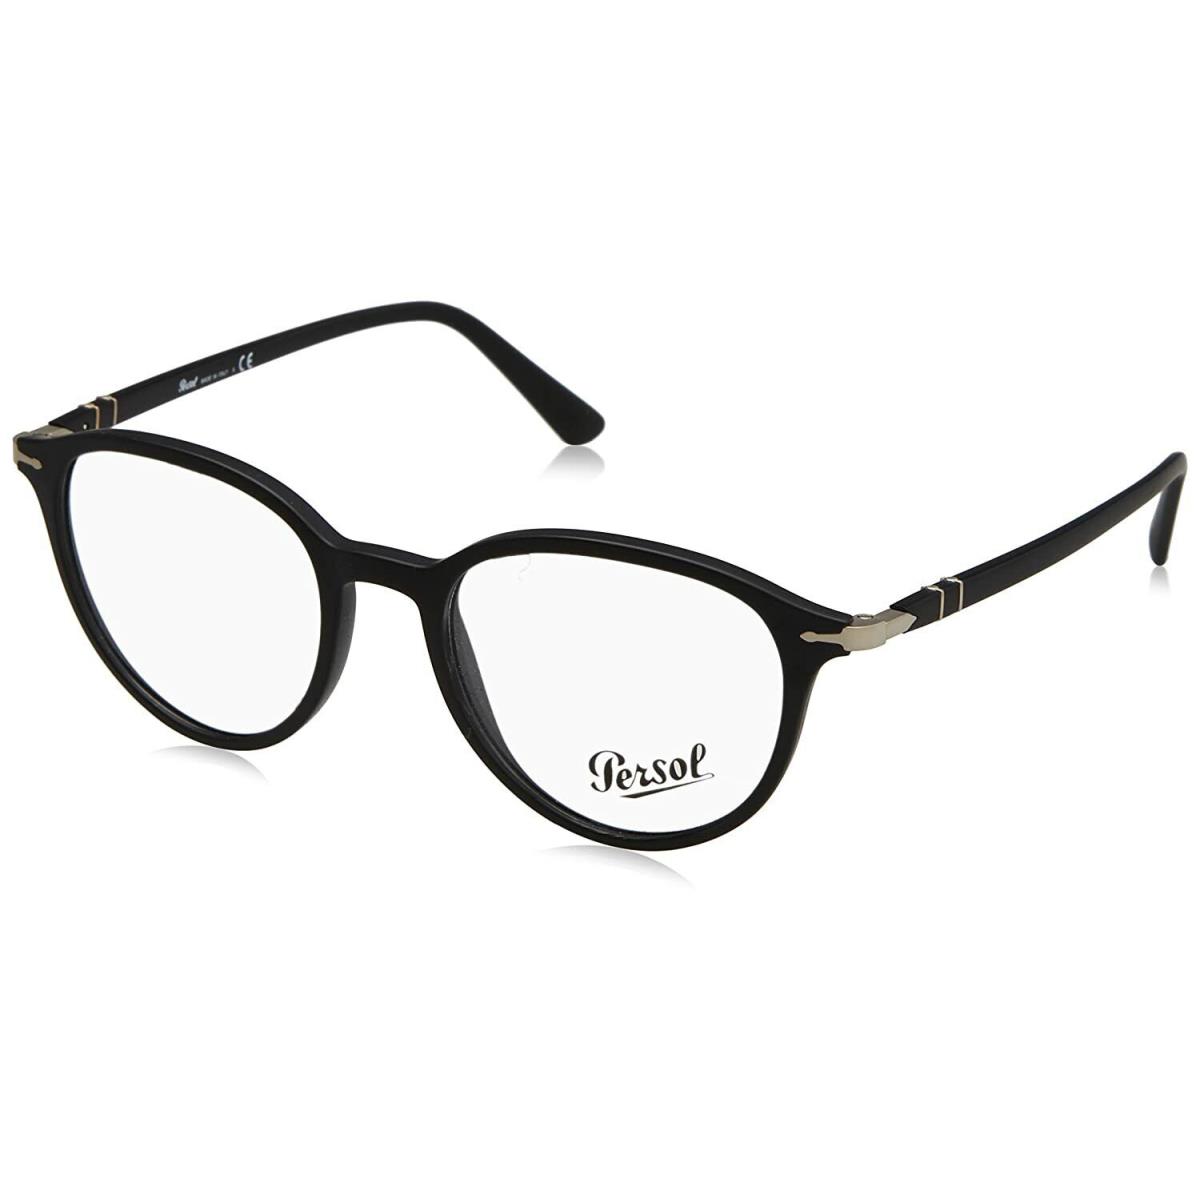 Persol Eyeglasses 3169-v 1042 Black Frames 50MM ST Rx-able